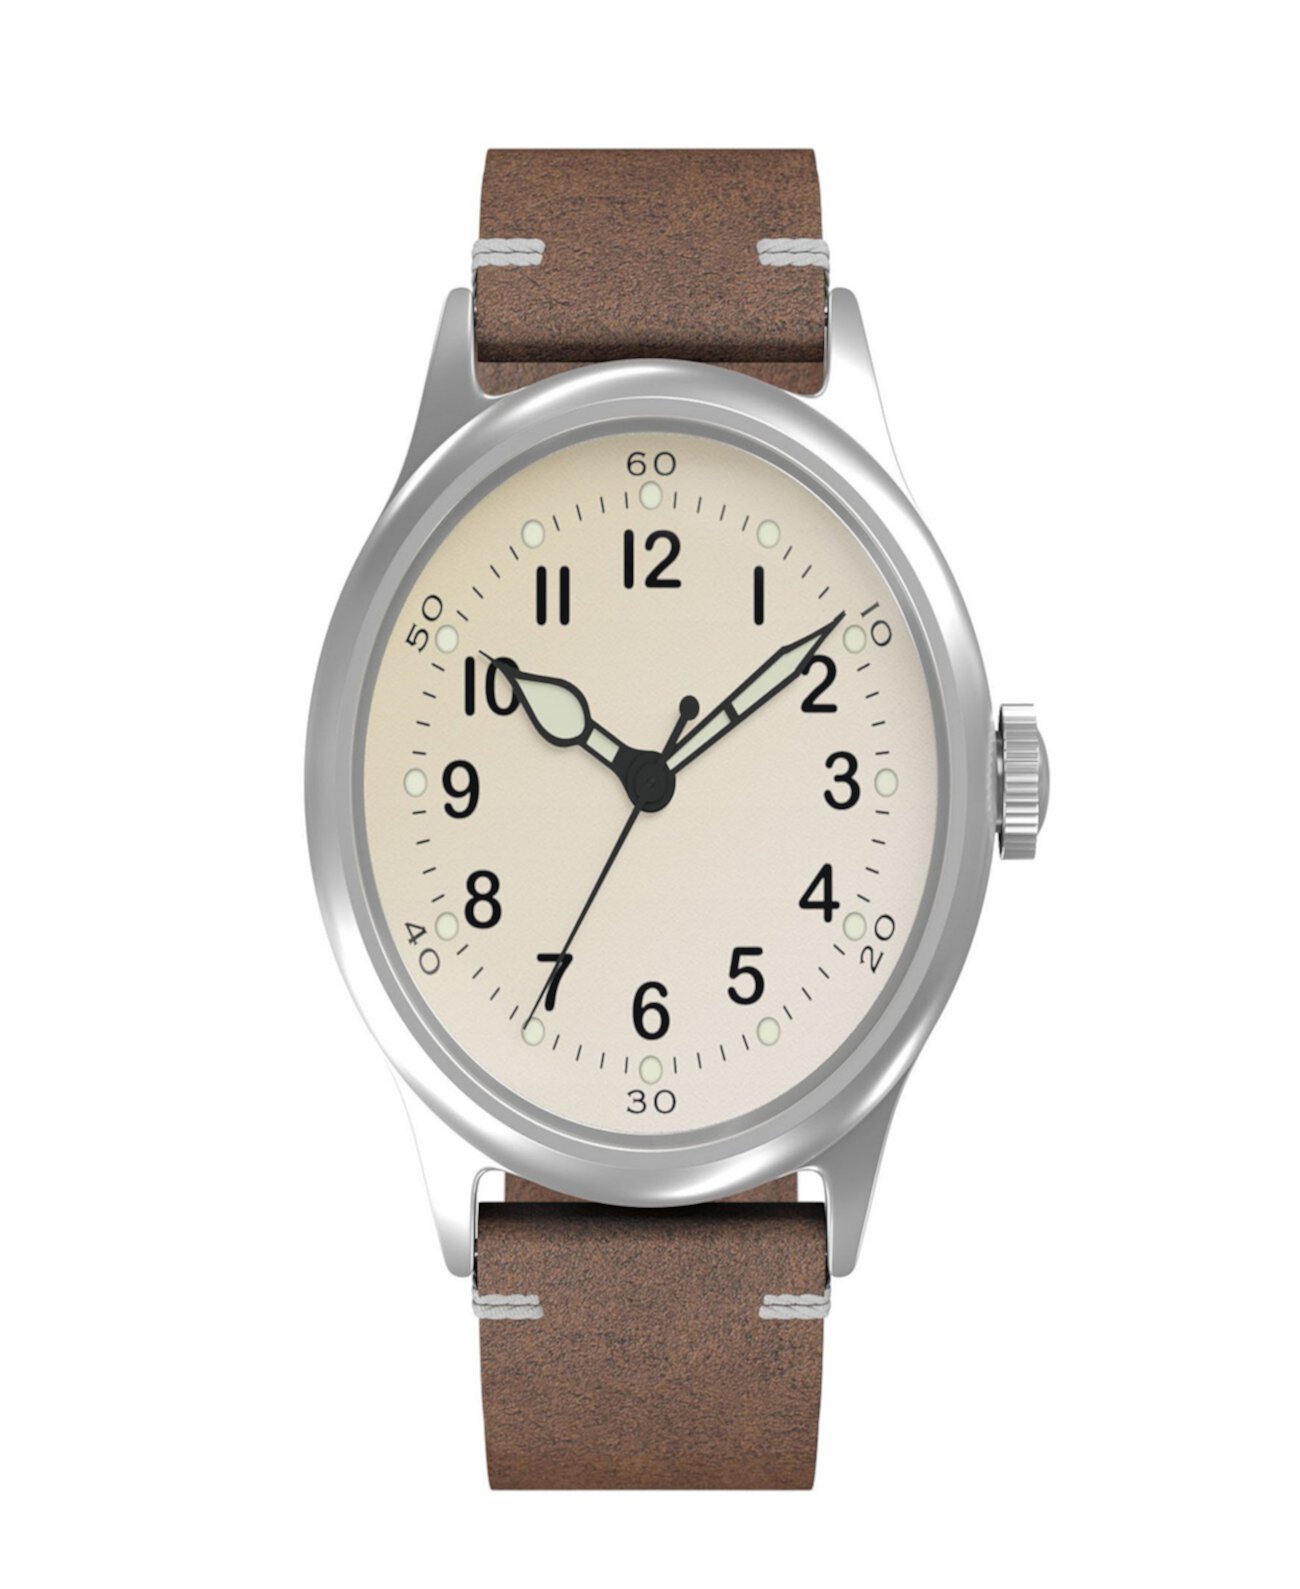 Мужские часы Tom Rice A11 с автоматическим механическим коричневым кожаным ремешком 42 мм Ewatchfactory